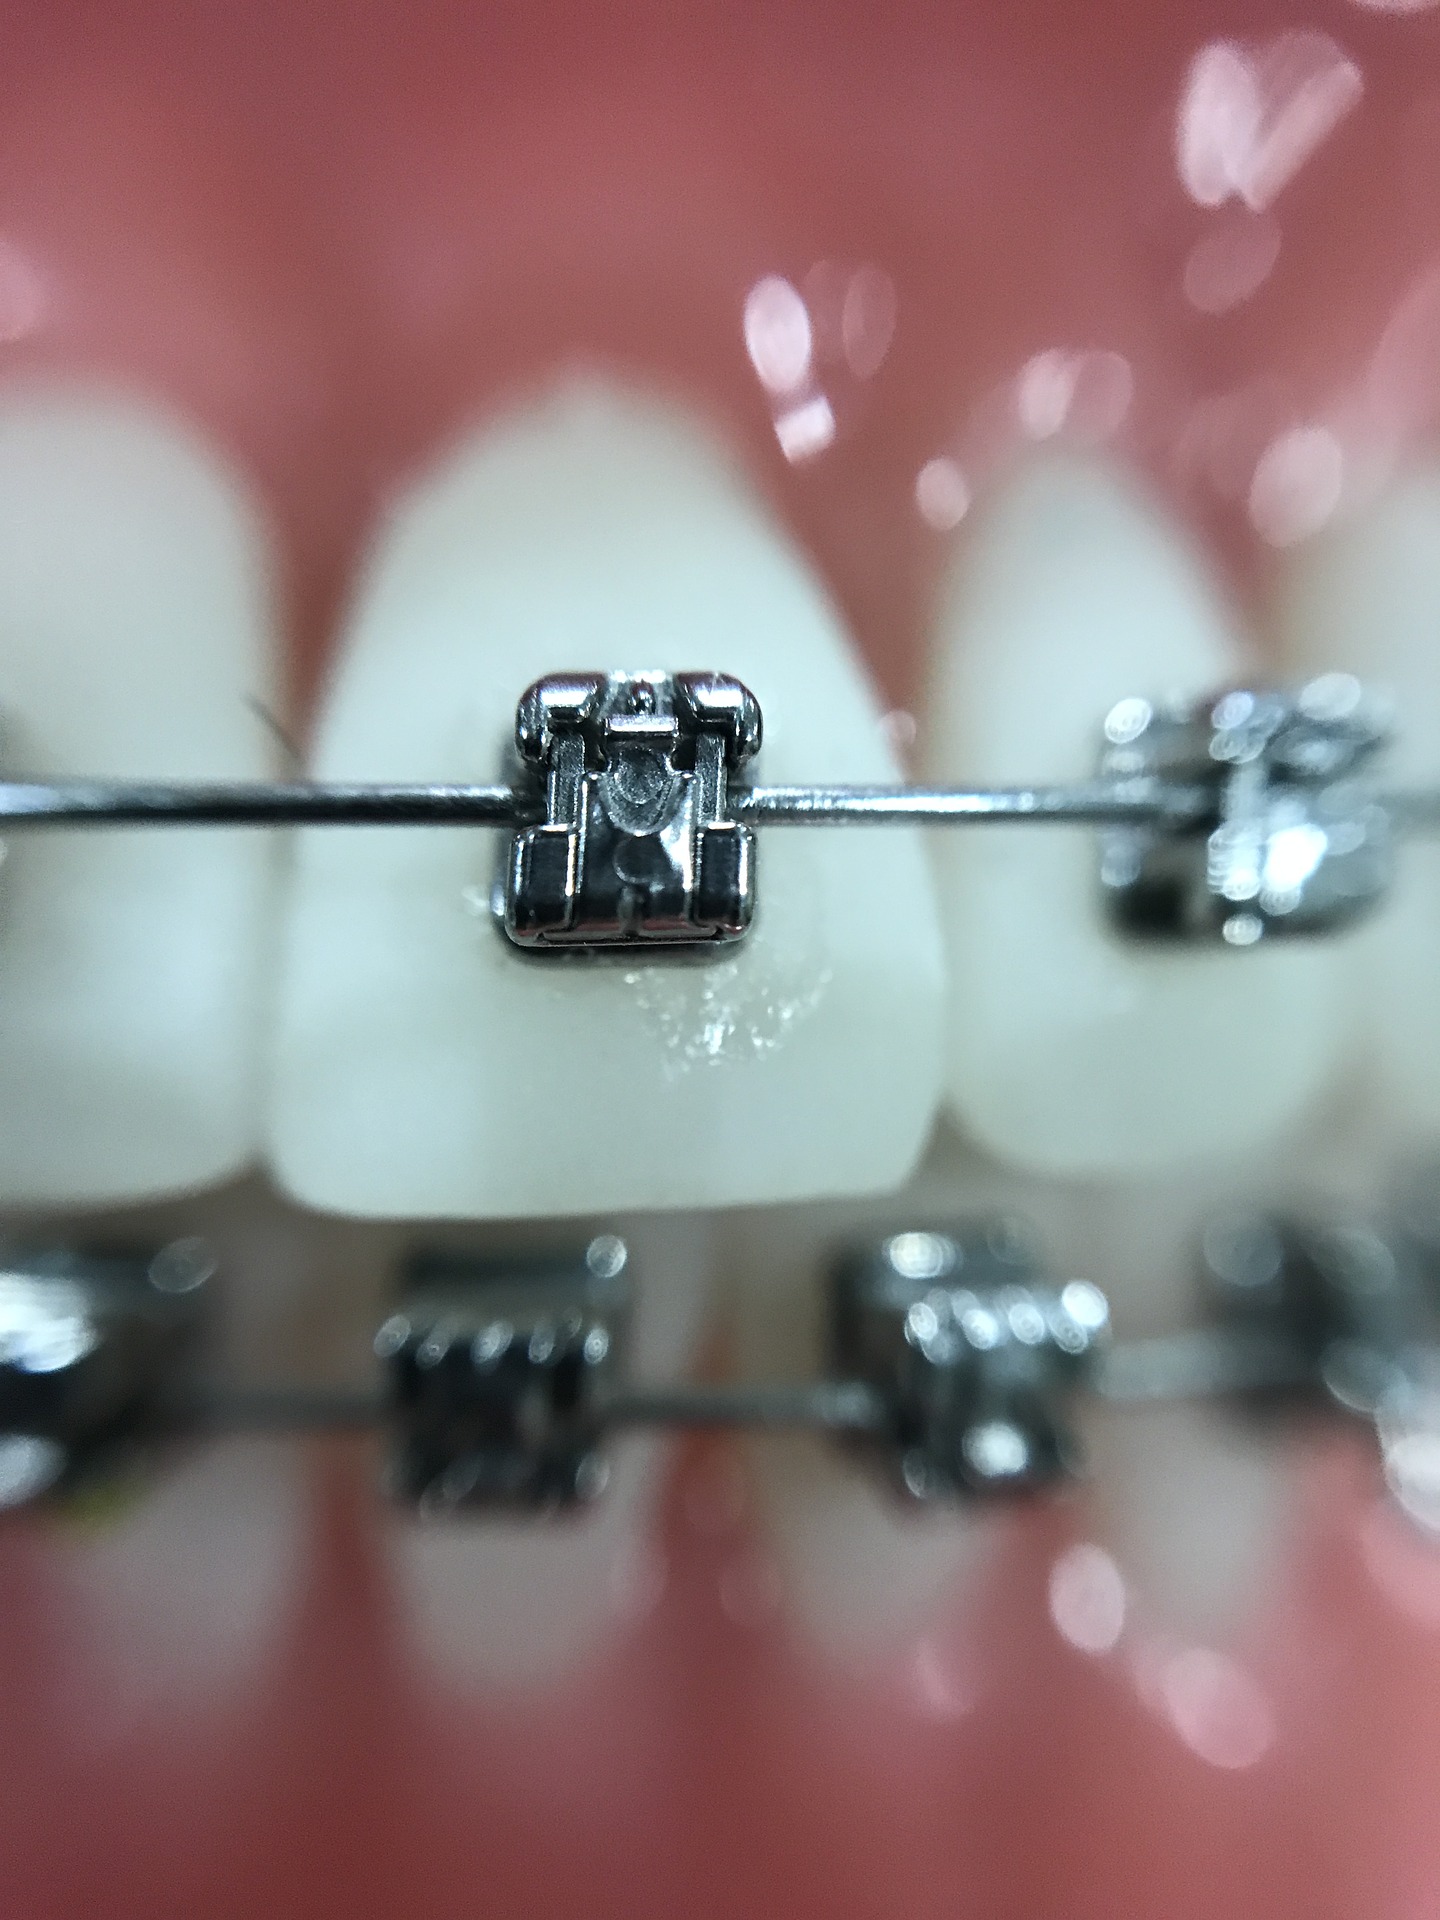 Jak dbać o ruchomy aparat ortodontyczny?